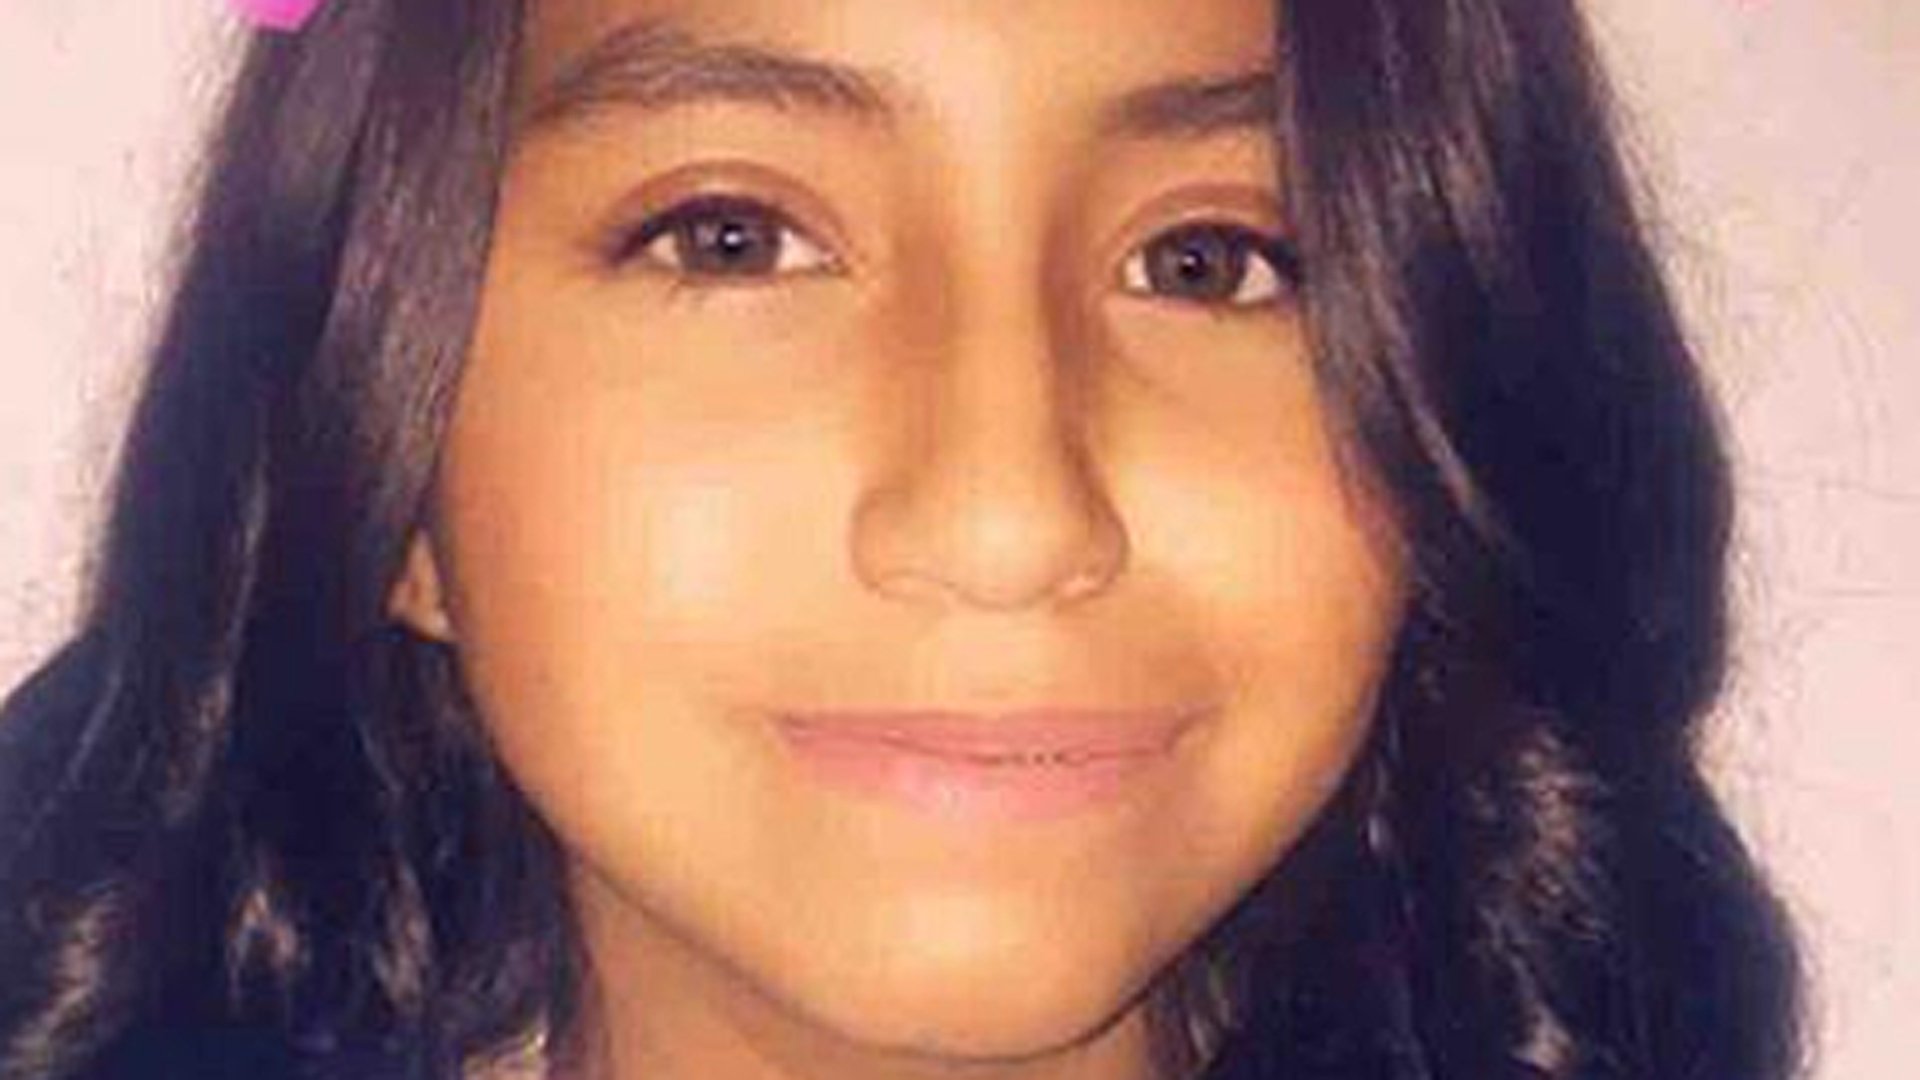 Sou feia e perdedora', diz menina de 13 anos antes de suicidar